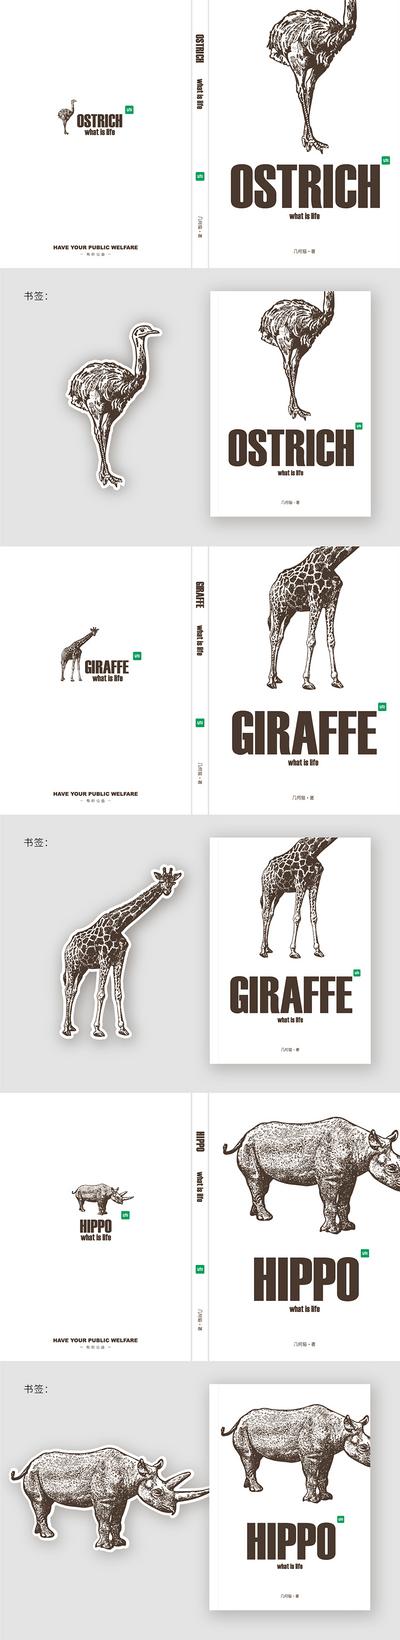 南门网 海报 创意 系列 动物 公益 保护动物 书籍 封面 创意设计 高级灰 极简 大气 书签 趣味 鸵鸟 犀牛